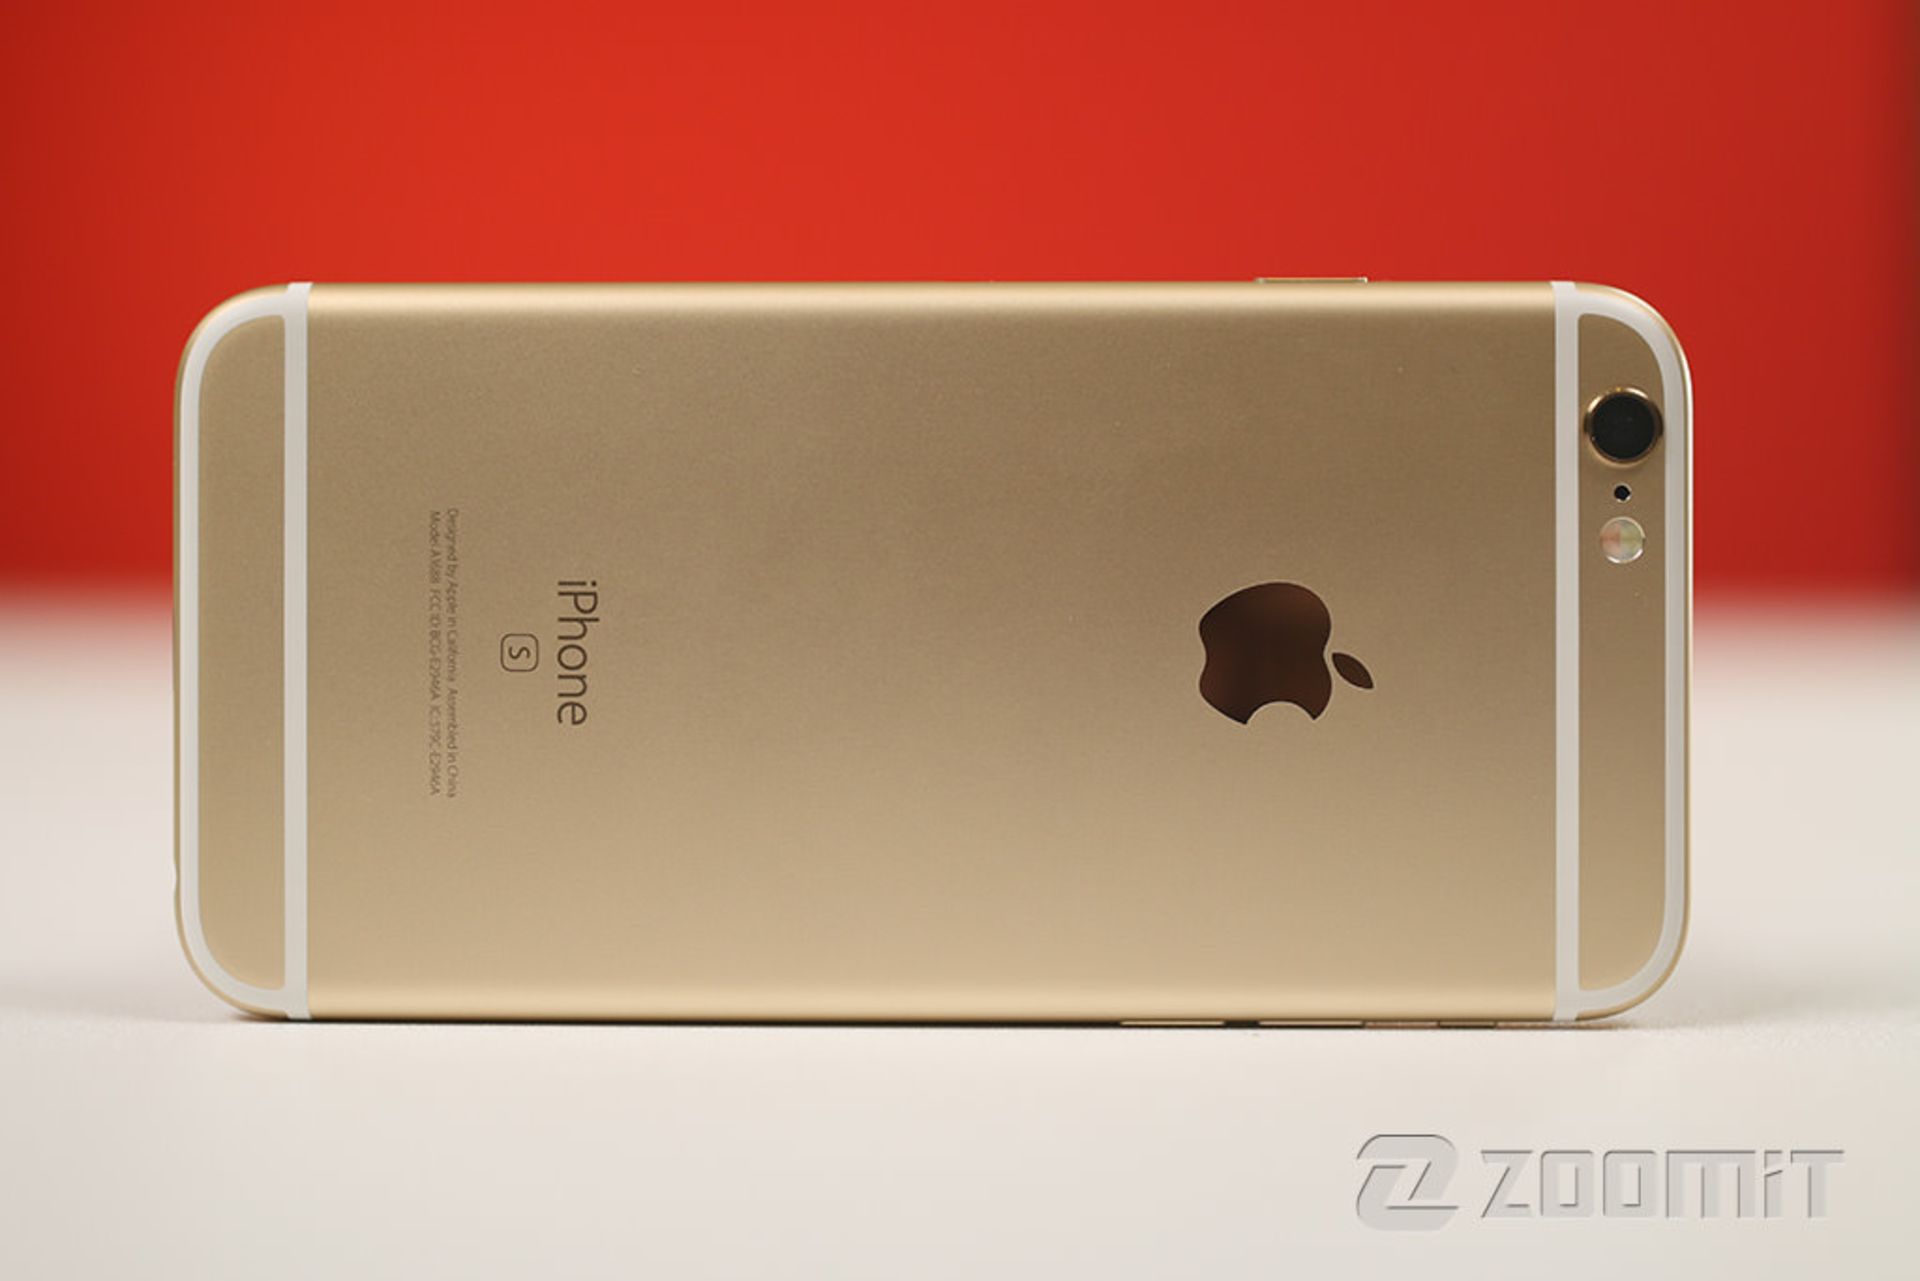 بررسی آیفون 6 اس اپل (Apple iPhone 6S)